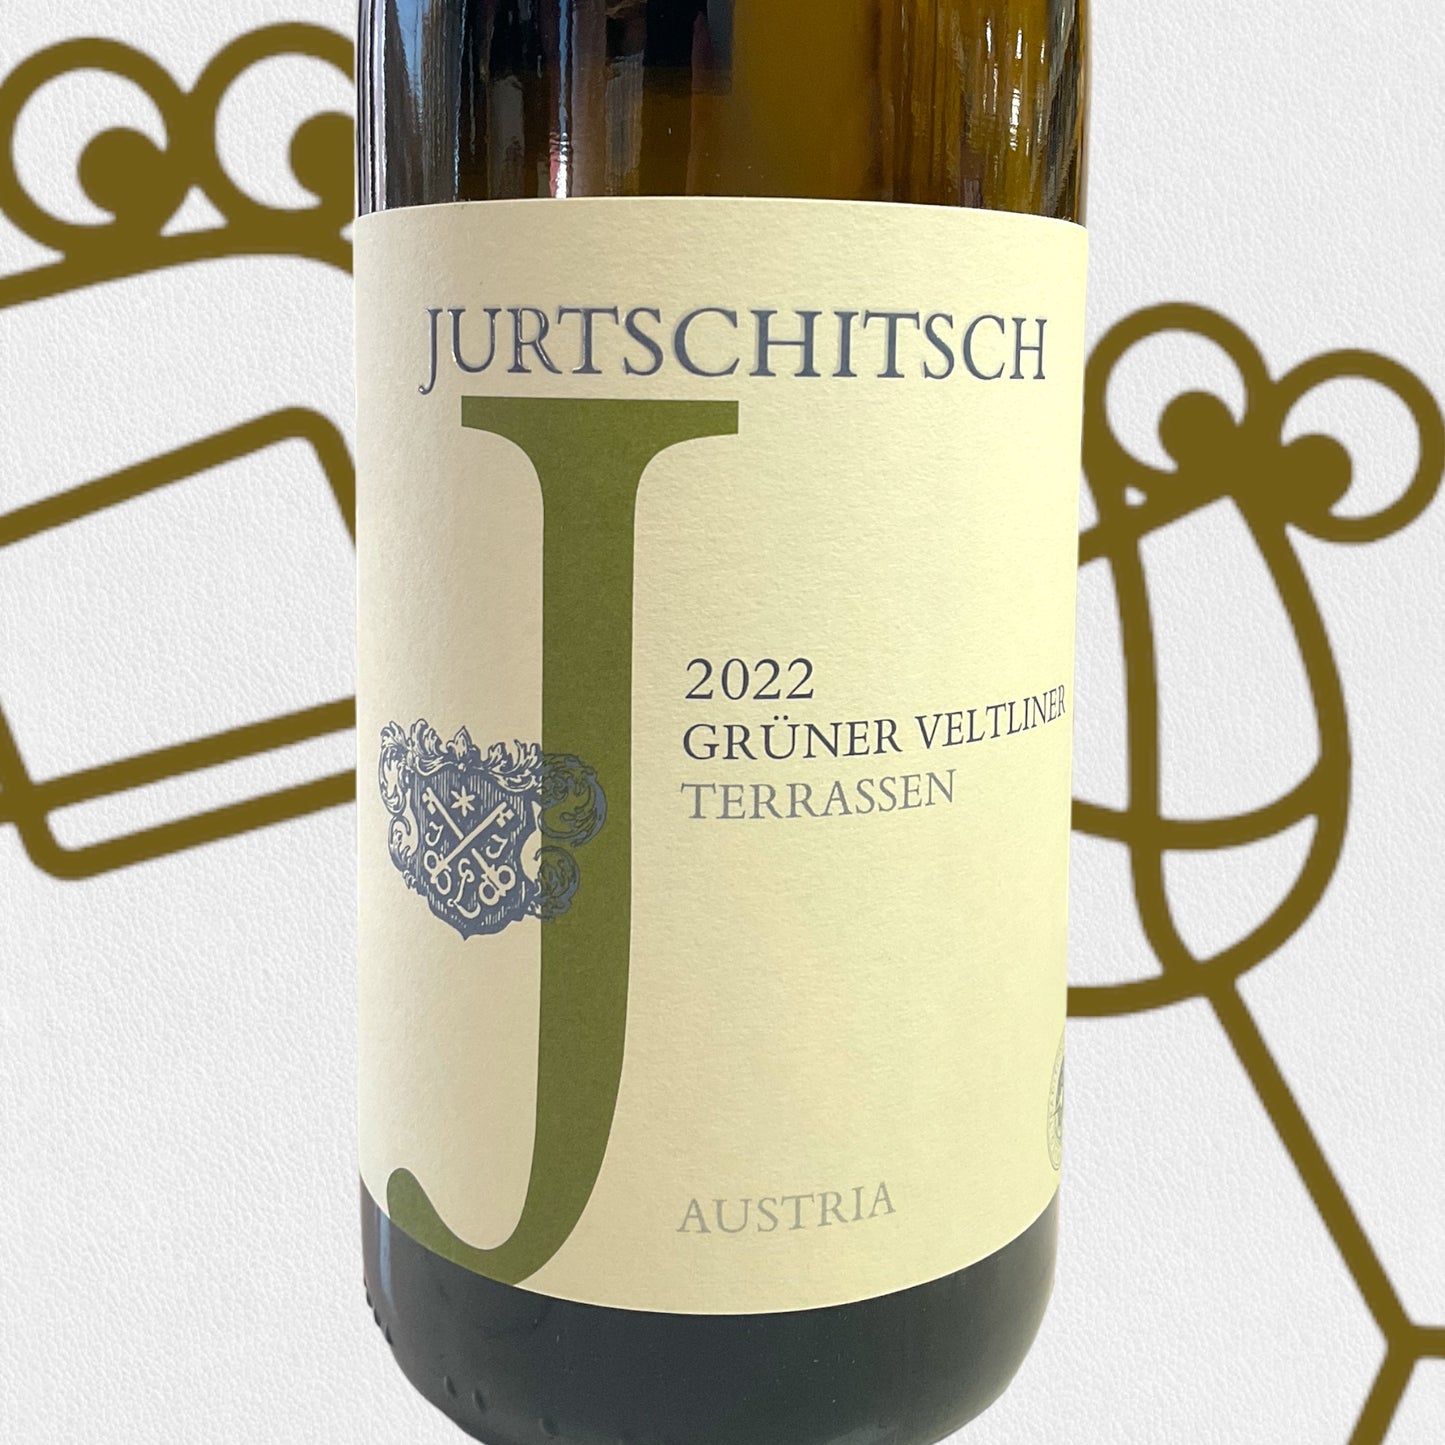 Jurtschitsch 'Terrassen' Grüner Veltliner 2022 Kamptal, Austria - Williston Park Wines & Spirits